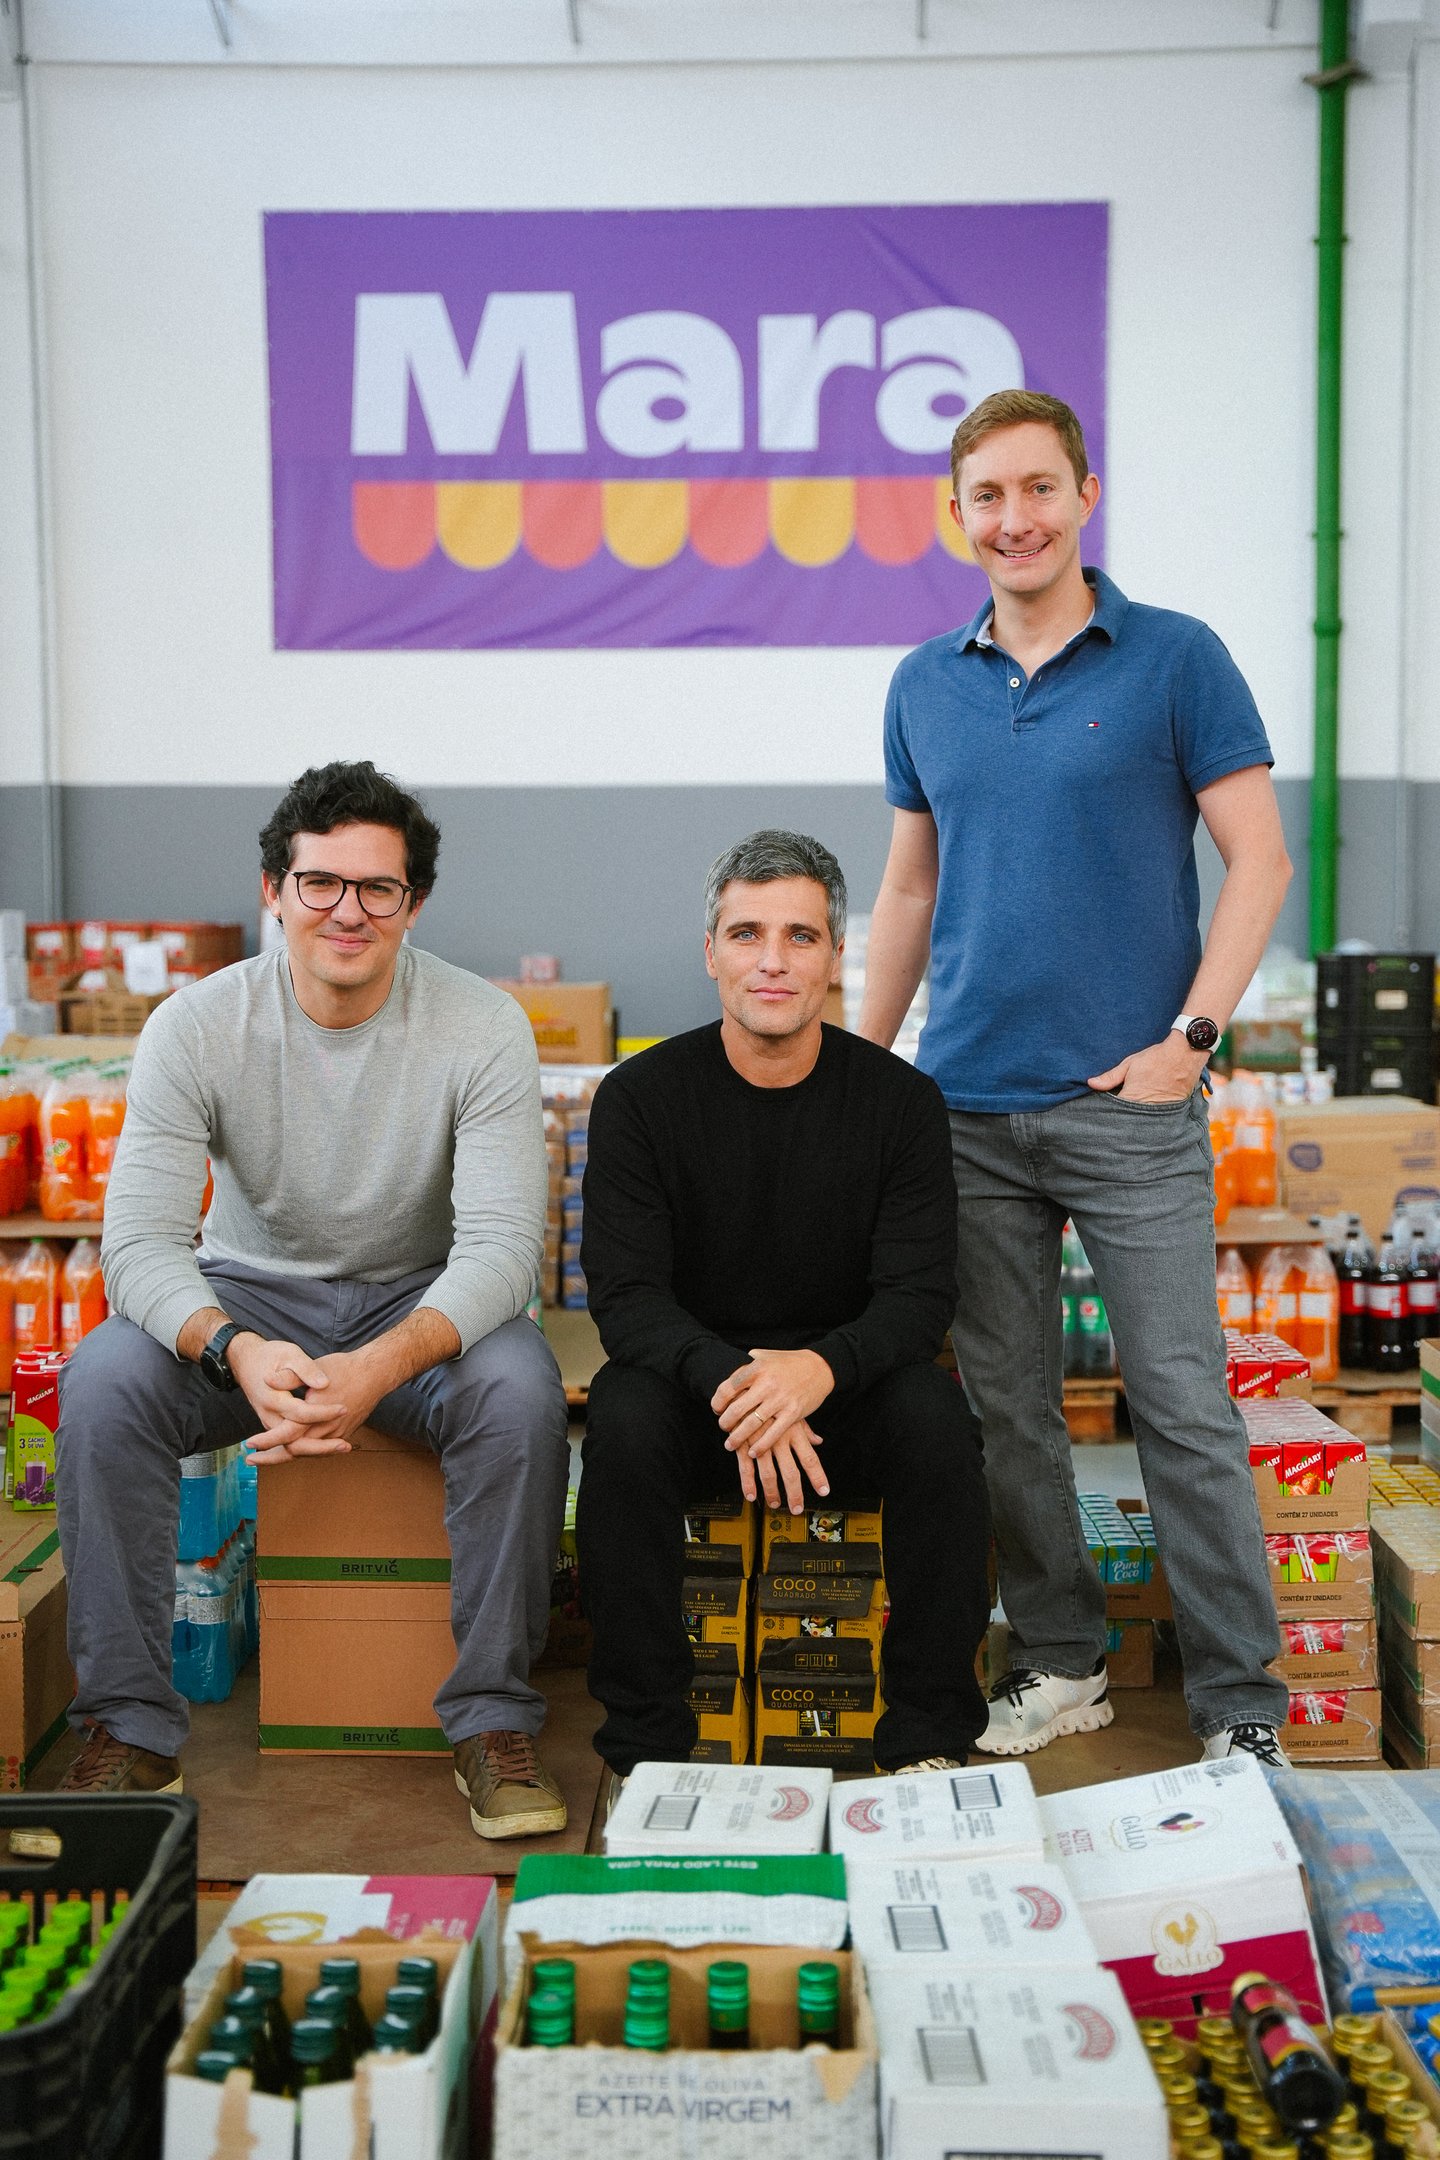 Bruno Gagliasso é novo sócio da startup Mara, de alimentação a preço acessível